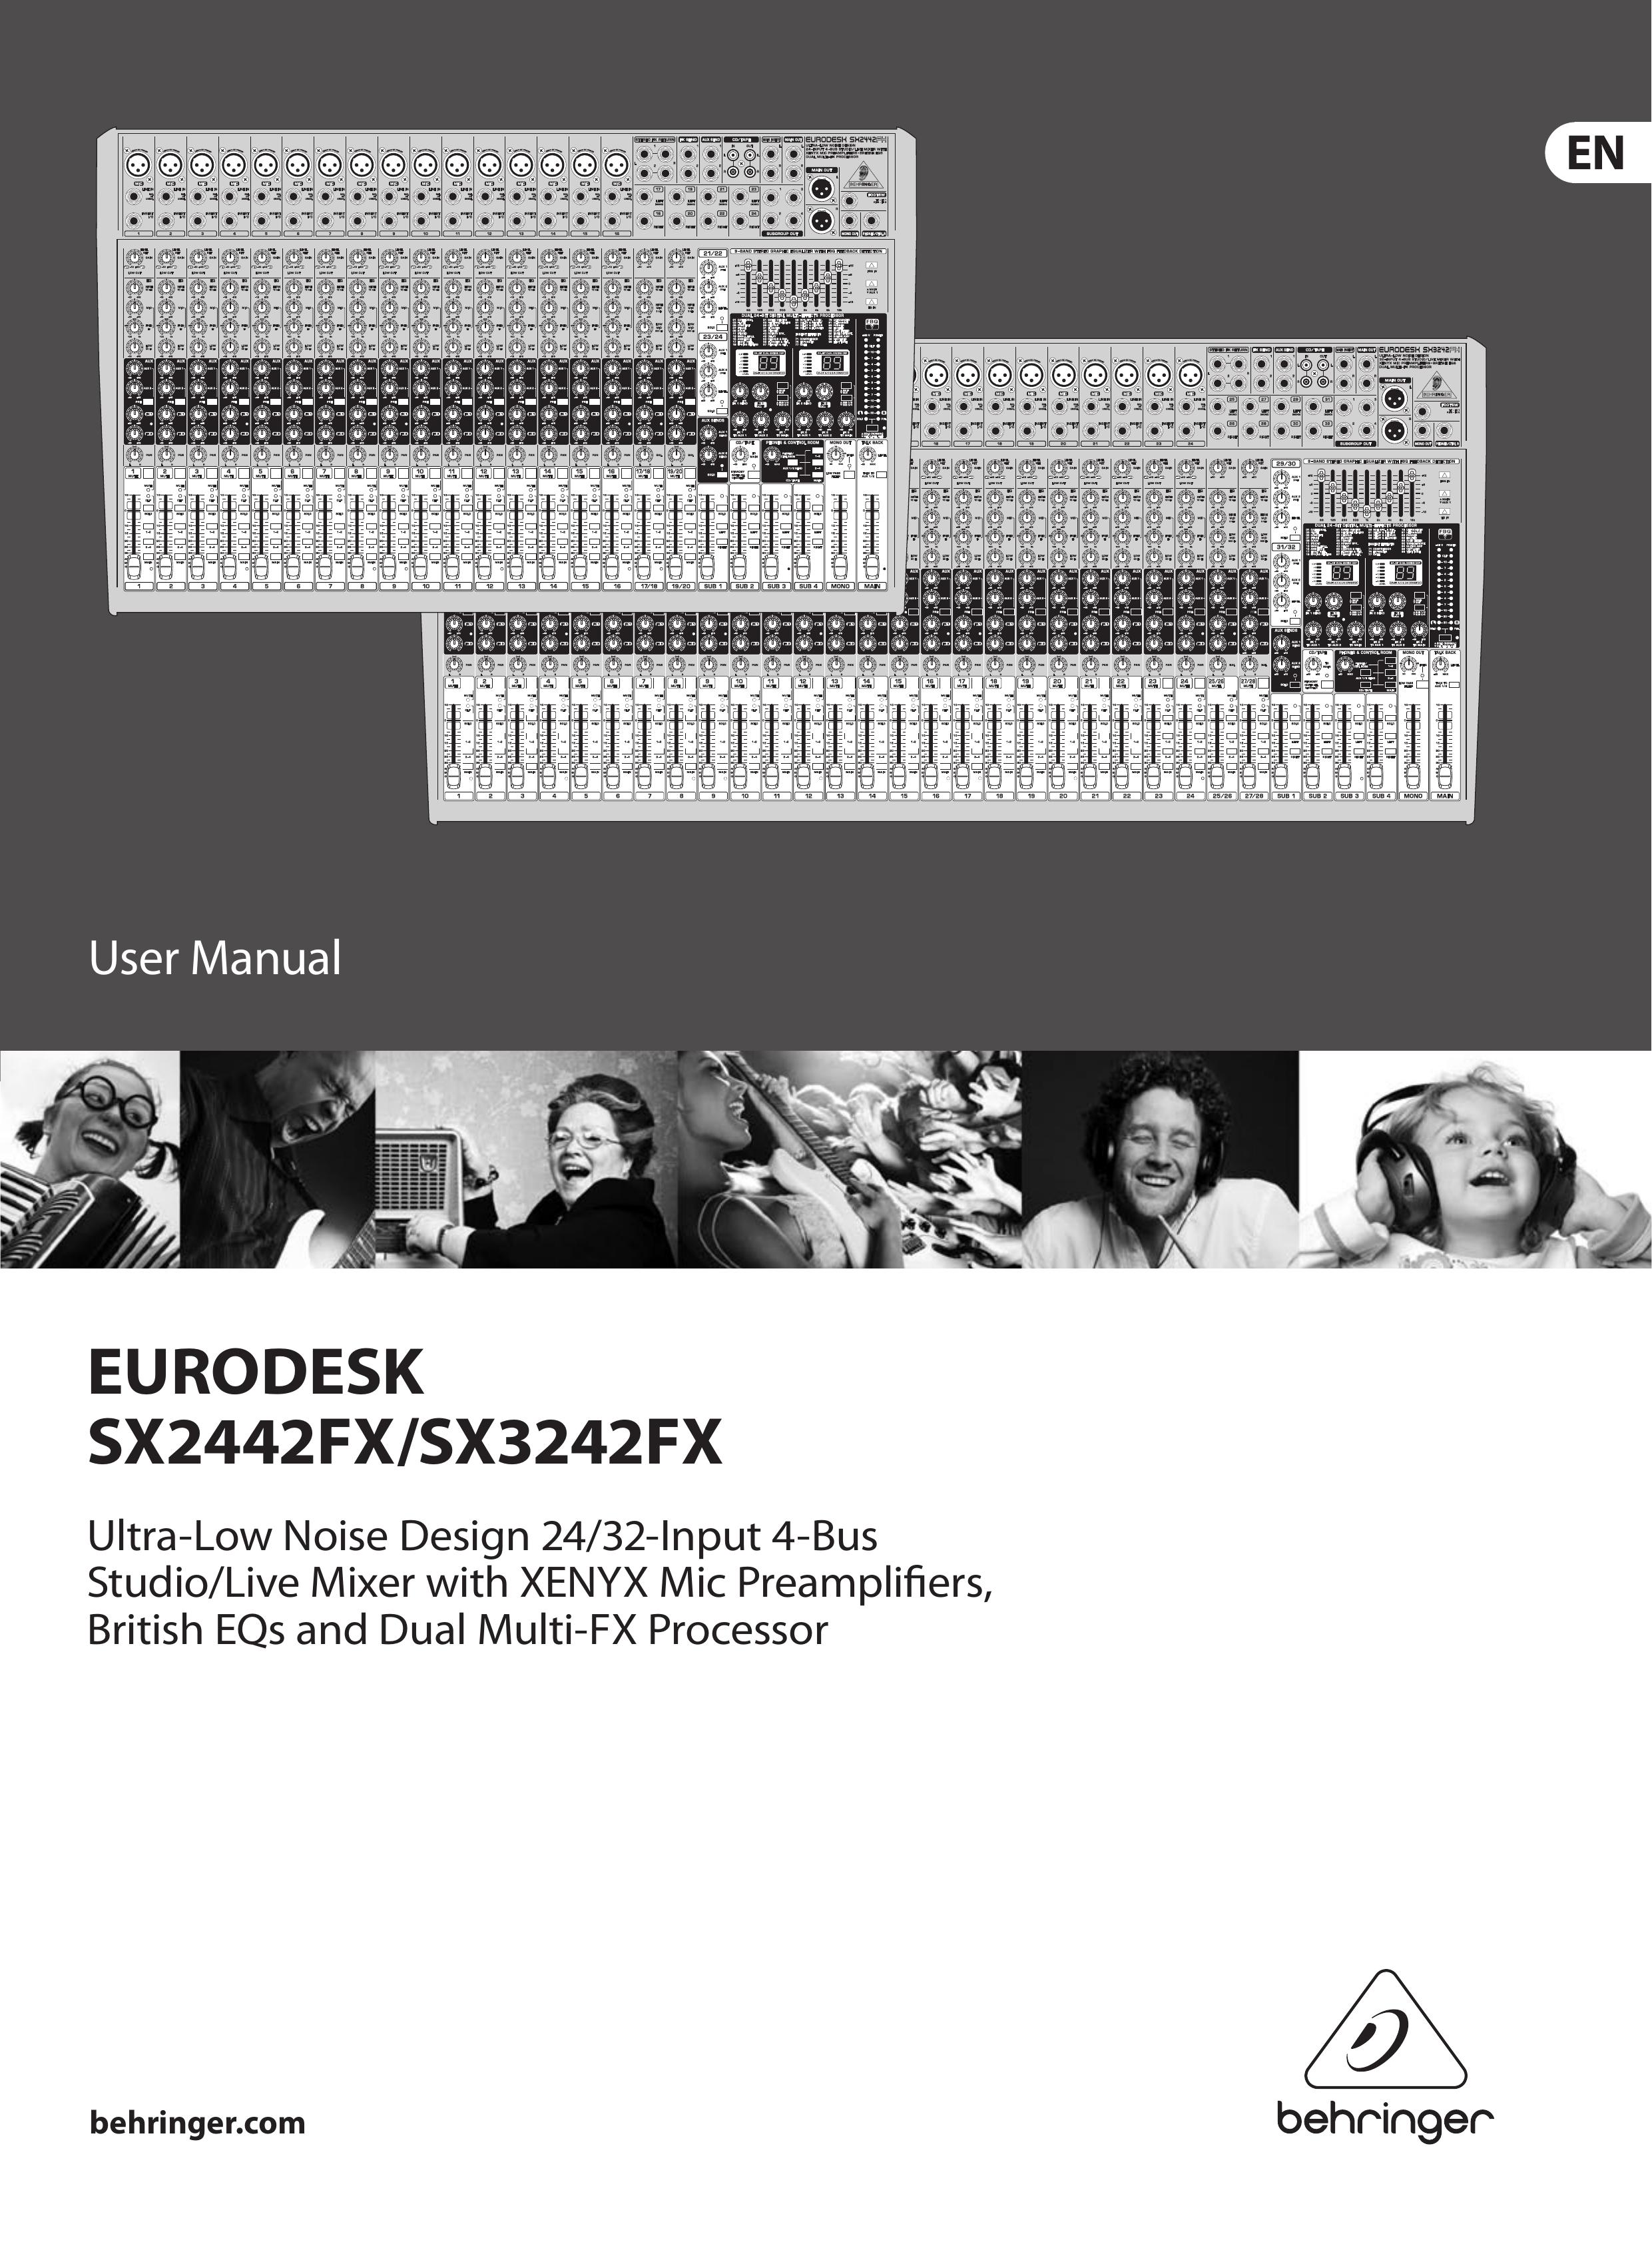 Behringer EURODESK Music Mixer User Manual